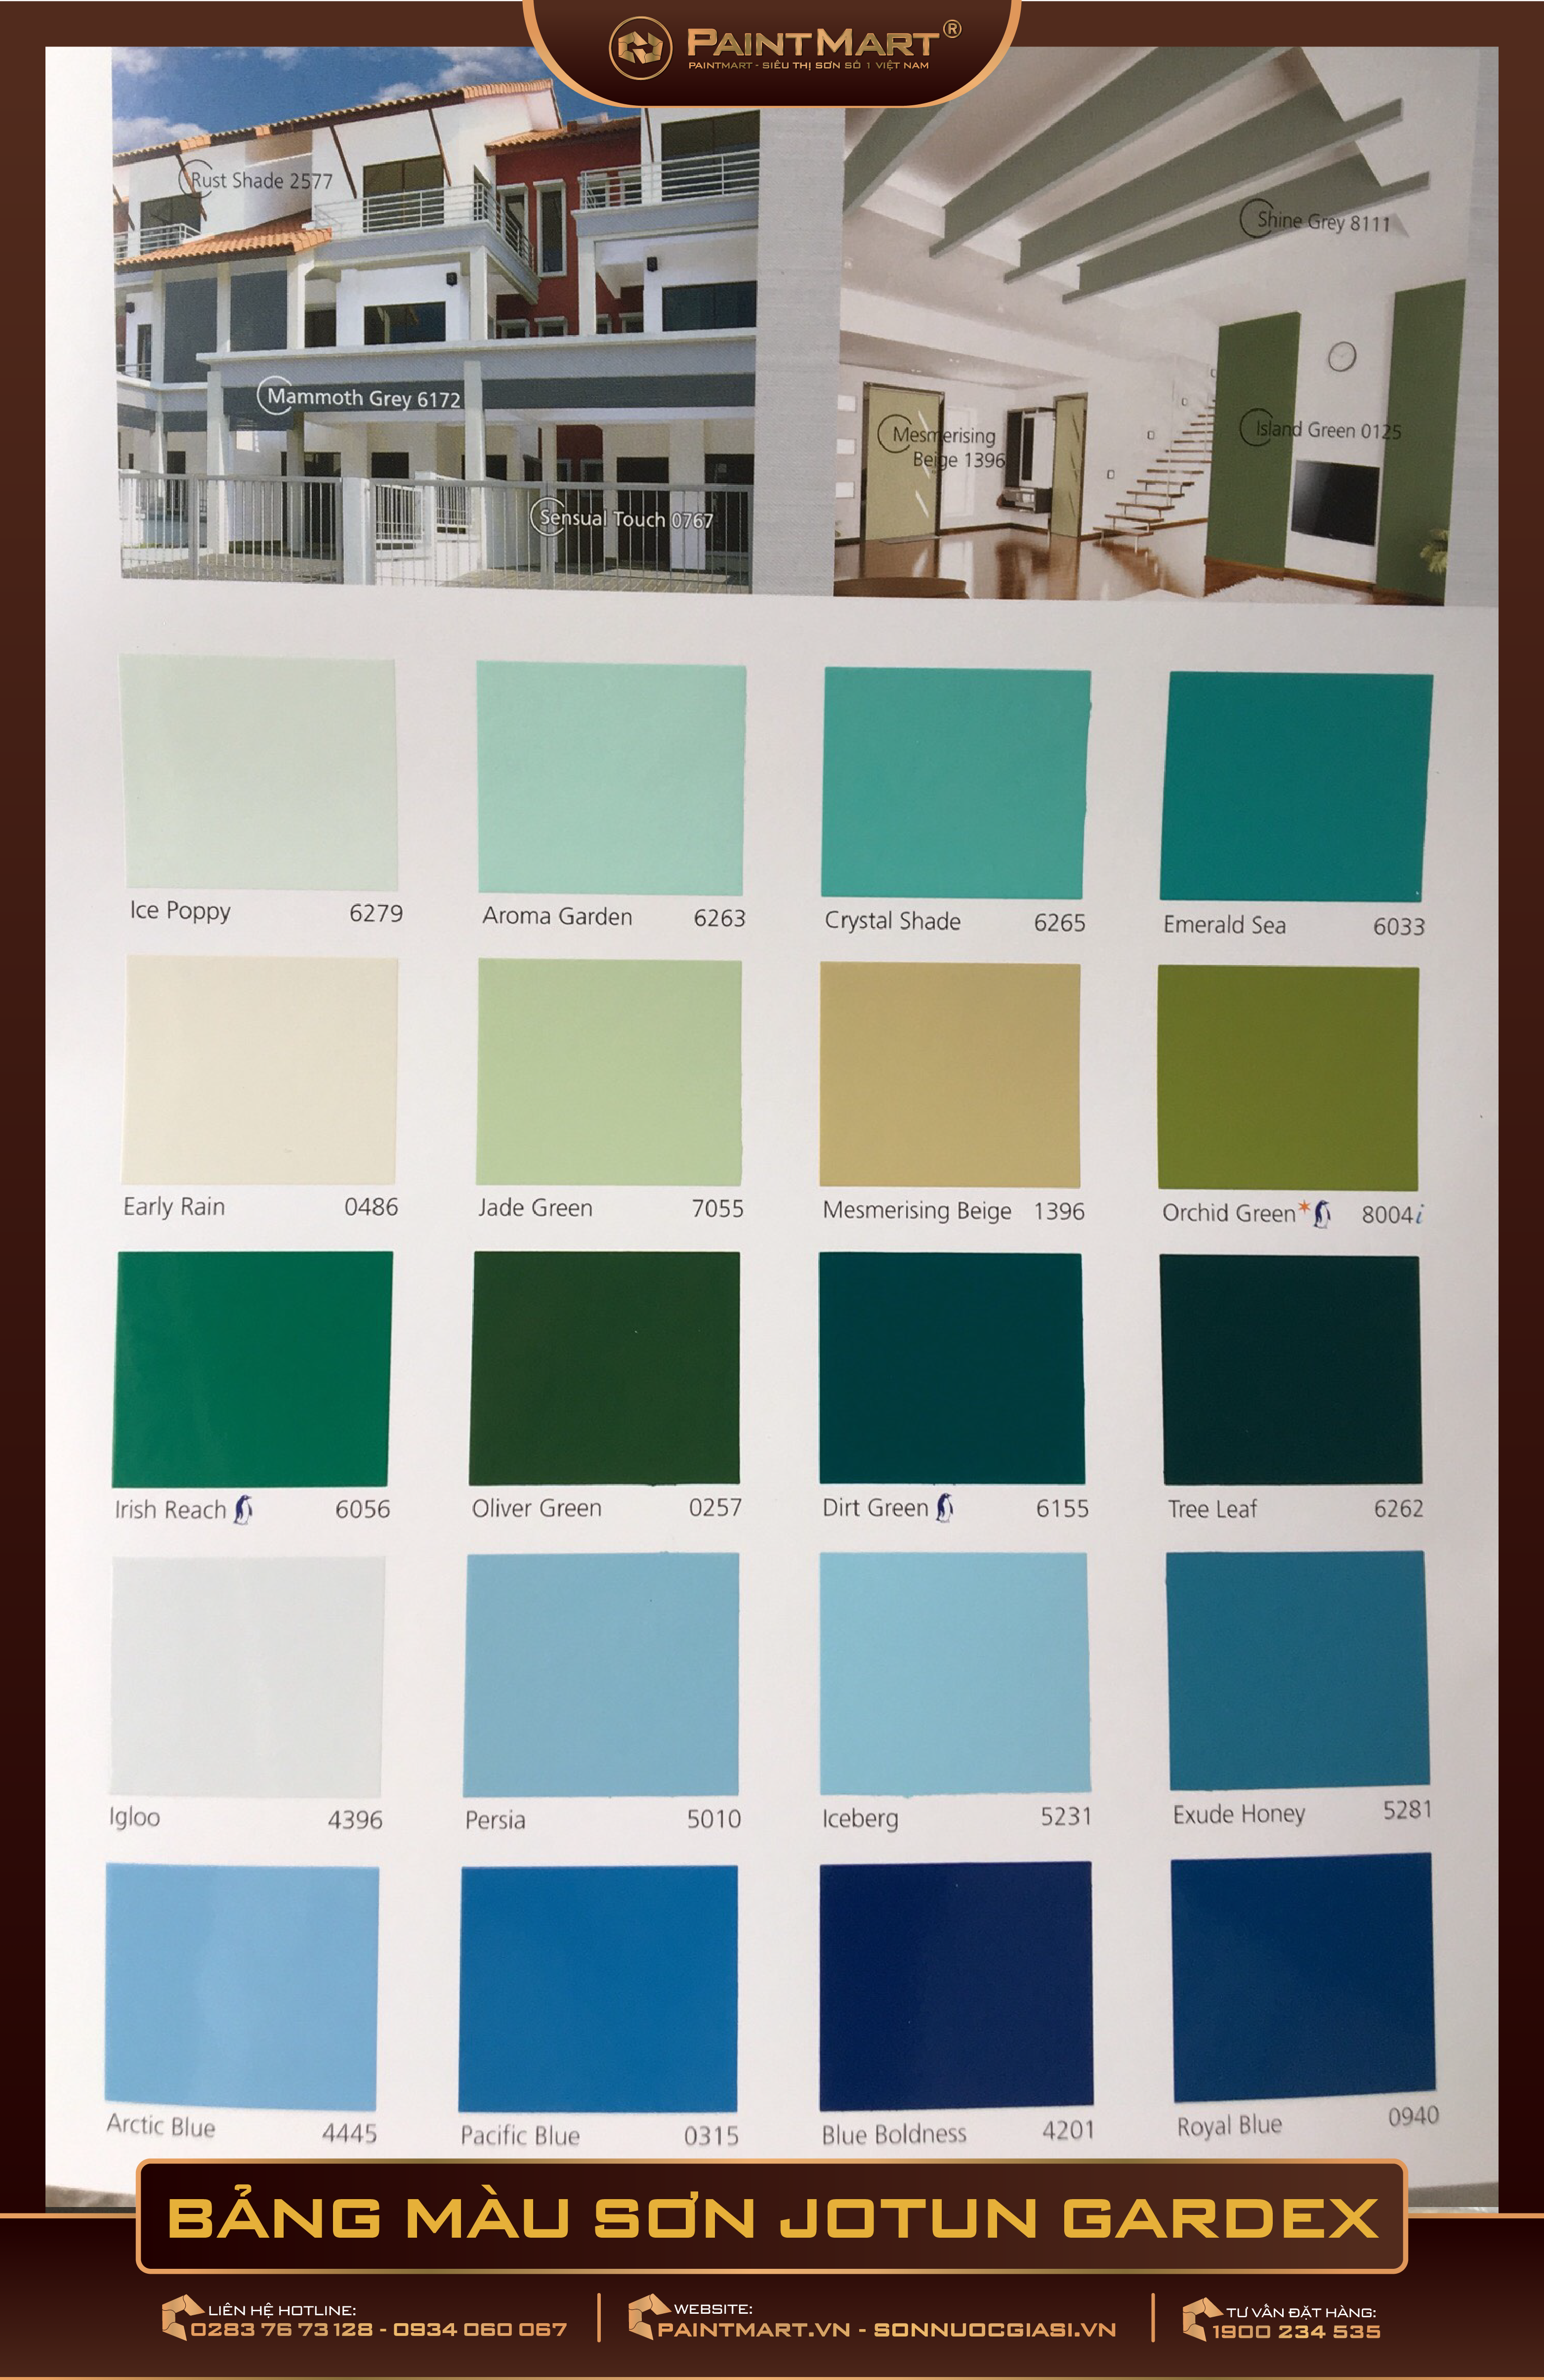 Bảng màu sơn Jotun Gardex: Chất lượng và đẳng cấp trong từng sắc màu. Không chỉ đơn thuần là bảng màu sơn, Jotun Gardex còn mang đến tinh thần sáng tạo và cá tính khi lựa chọn sơn cho ngôi nhà của bạn. Sự kết hợp giữa sự đa dạng, độ bền và tính thẩm mỹ tạo nên sản phẩm hoàn hảo cho không gian của bạn.